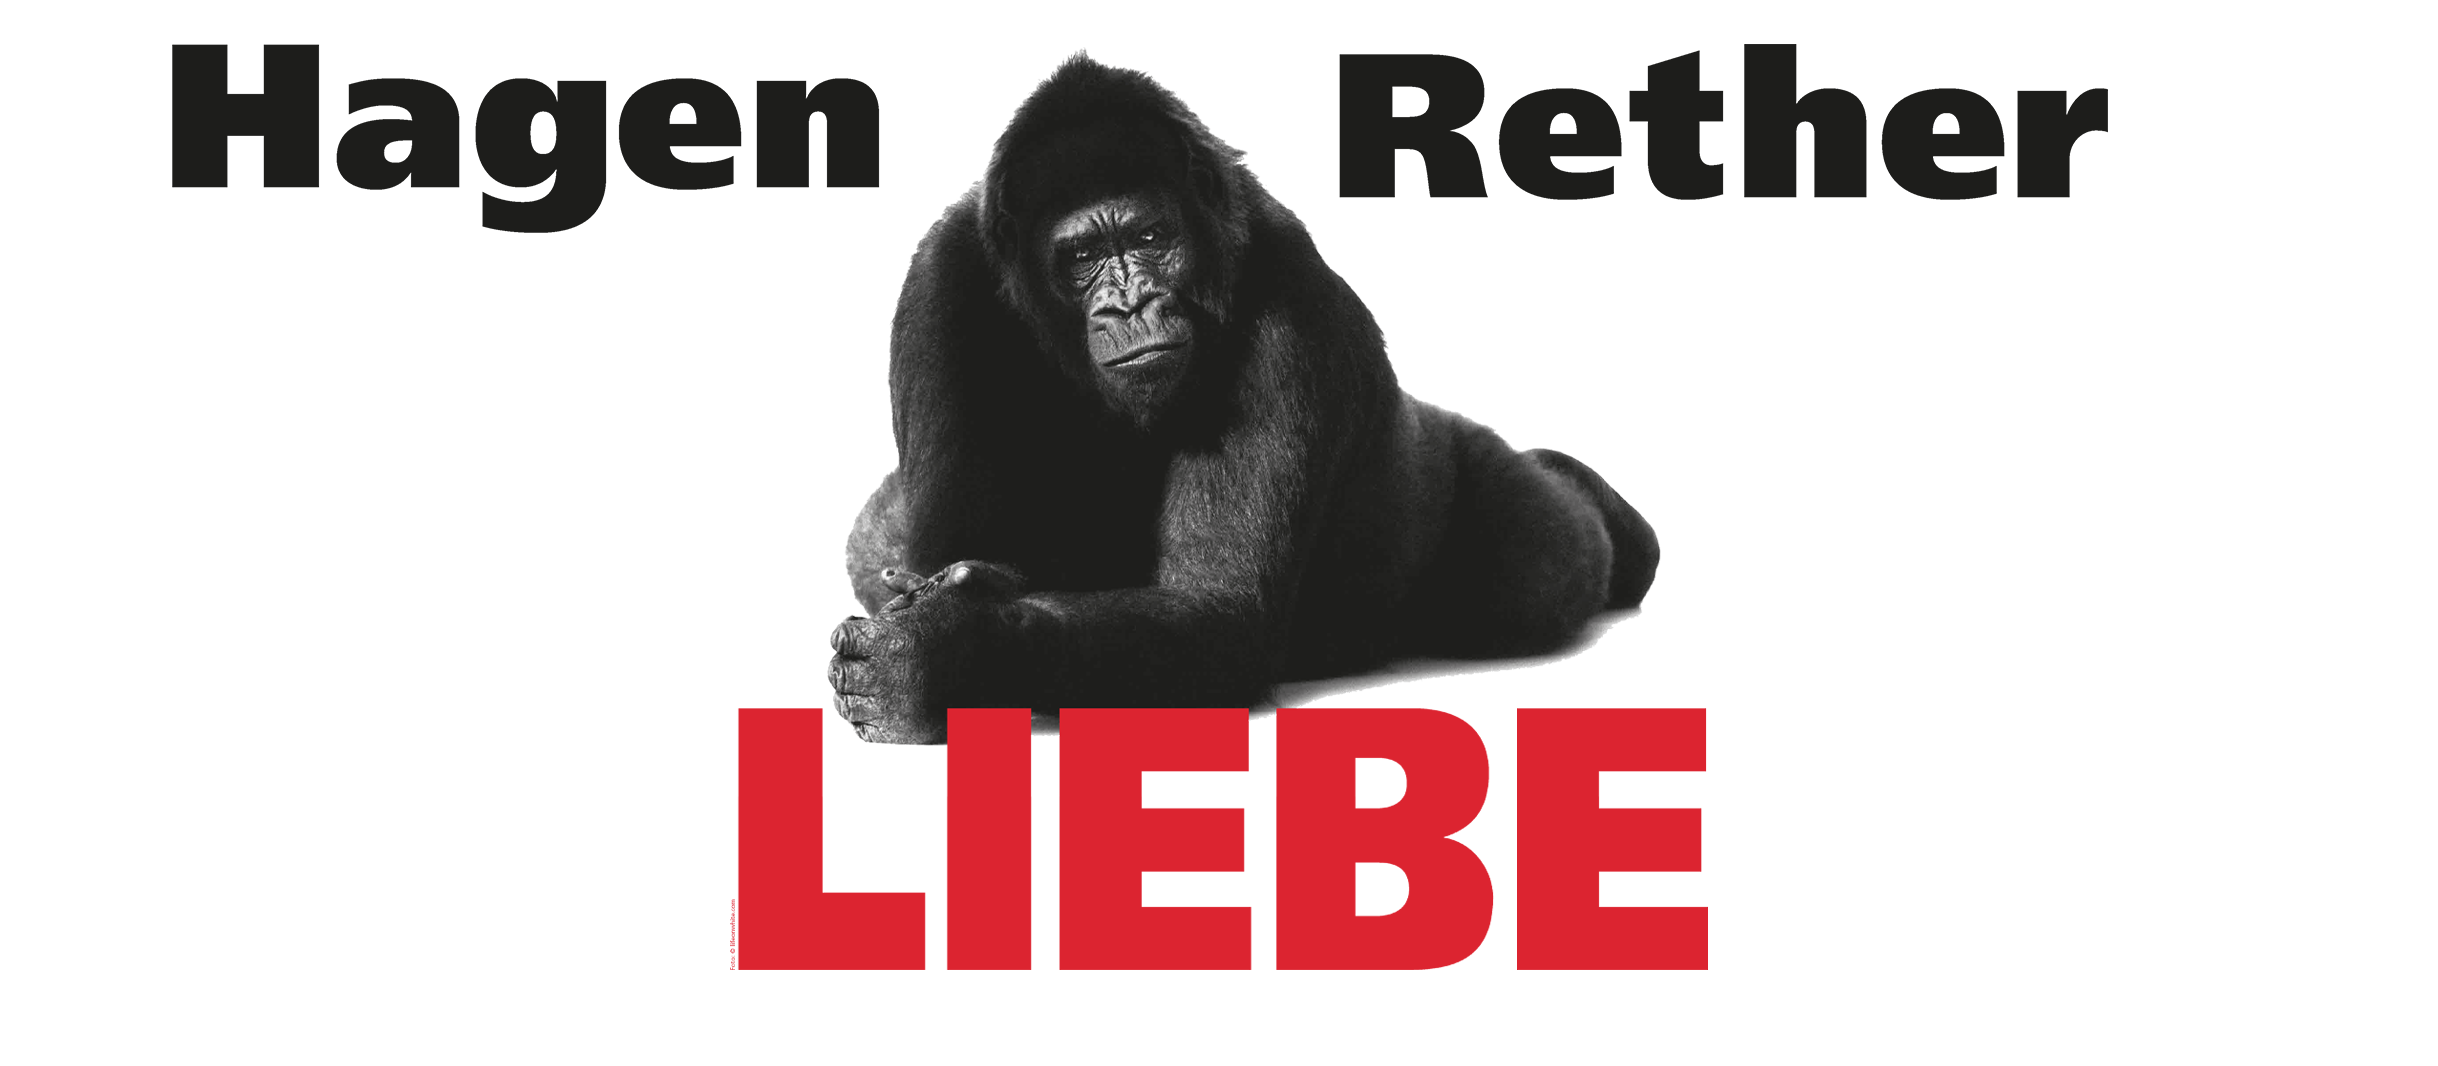 Ein schwarzer Gorilla liegt hinter dem in roten Lettern geschriebenen Wort LIEBE